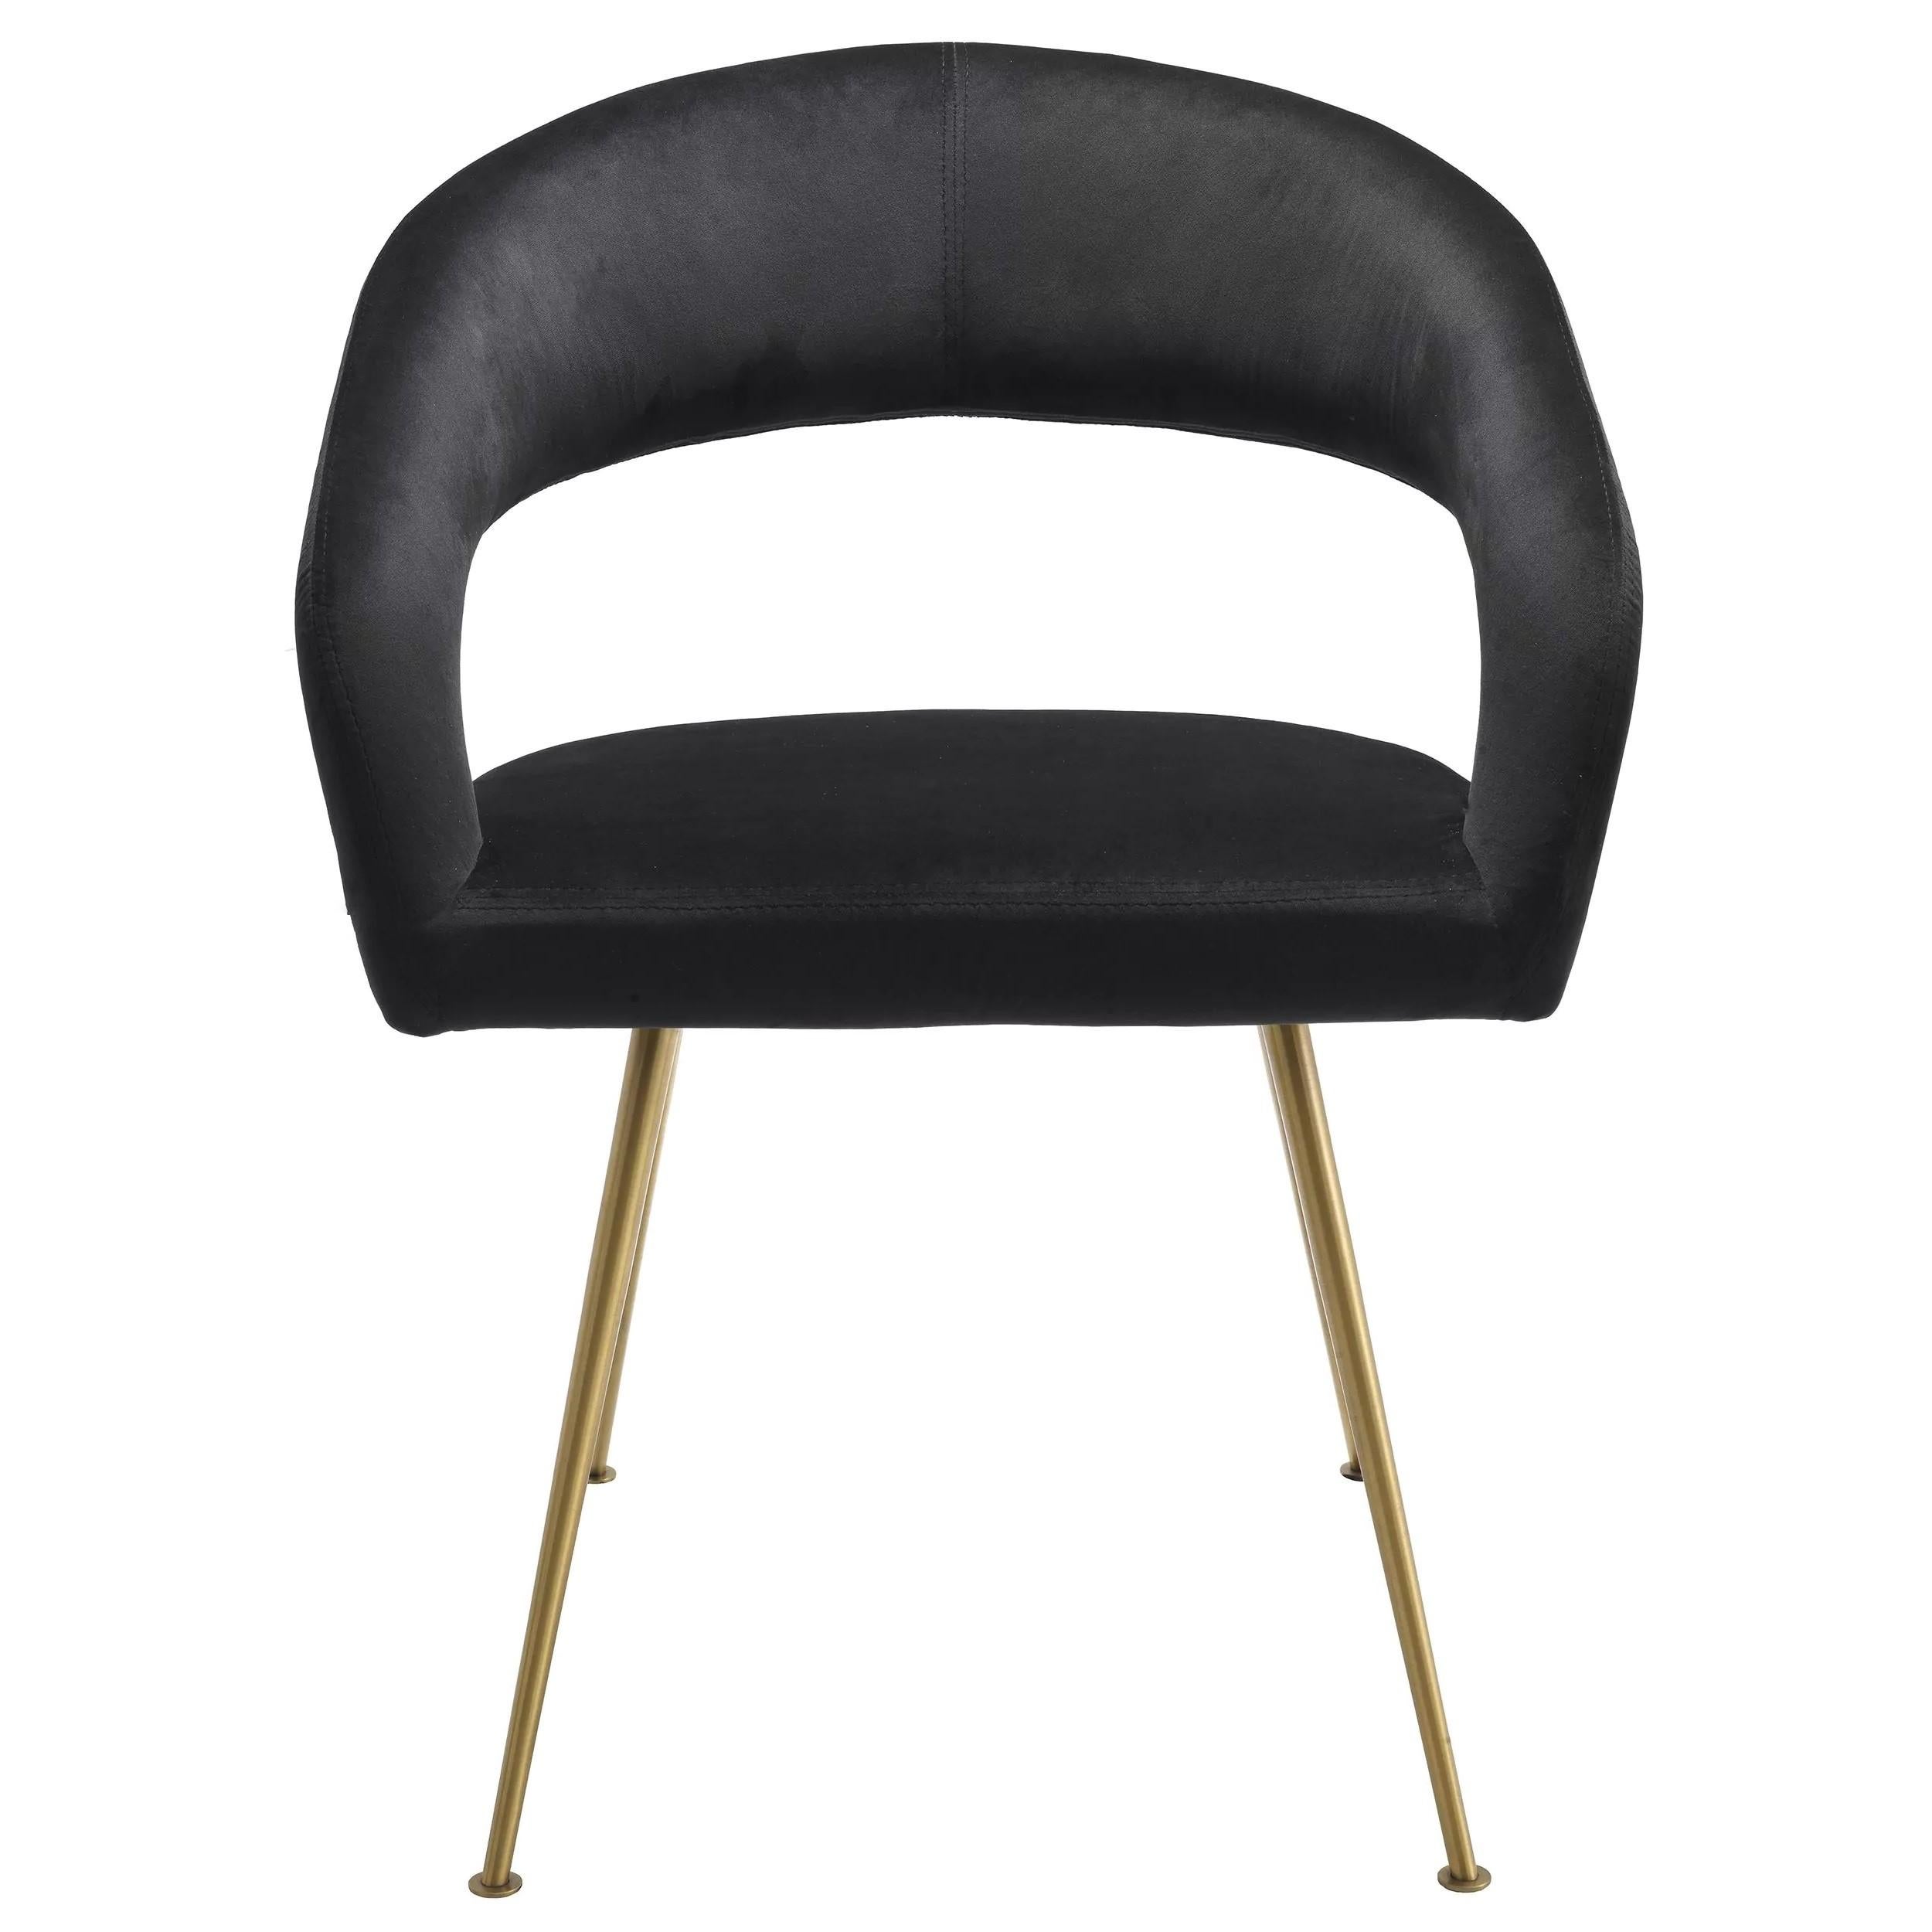 1950s Italian design style black velvet and brass finishes dining chair.